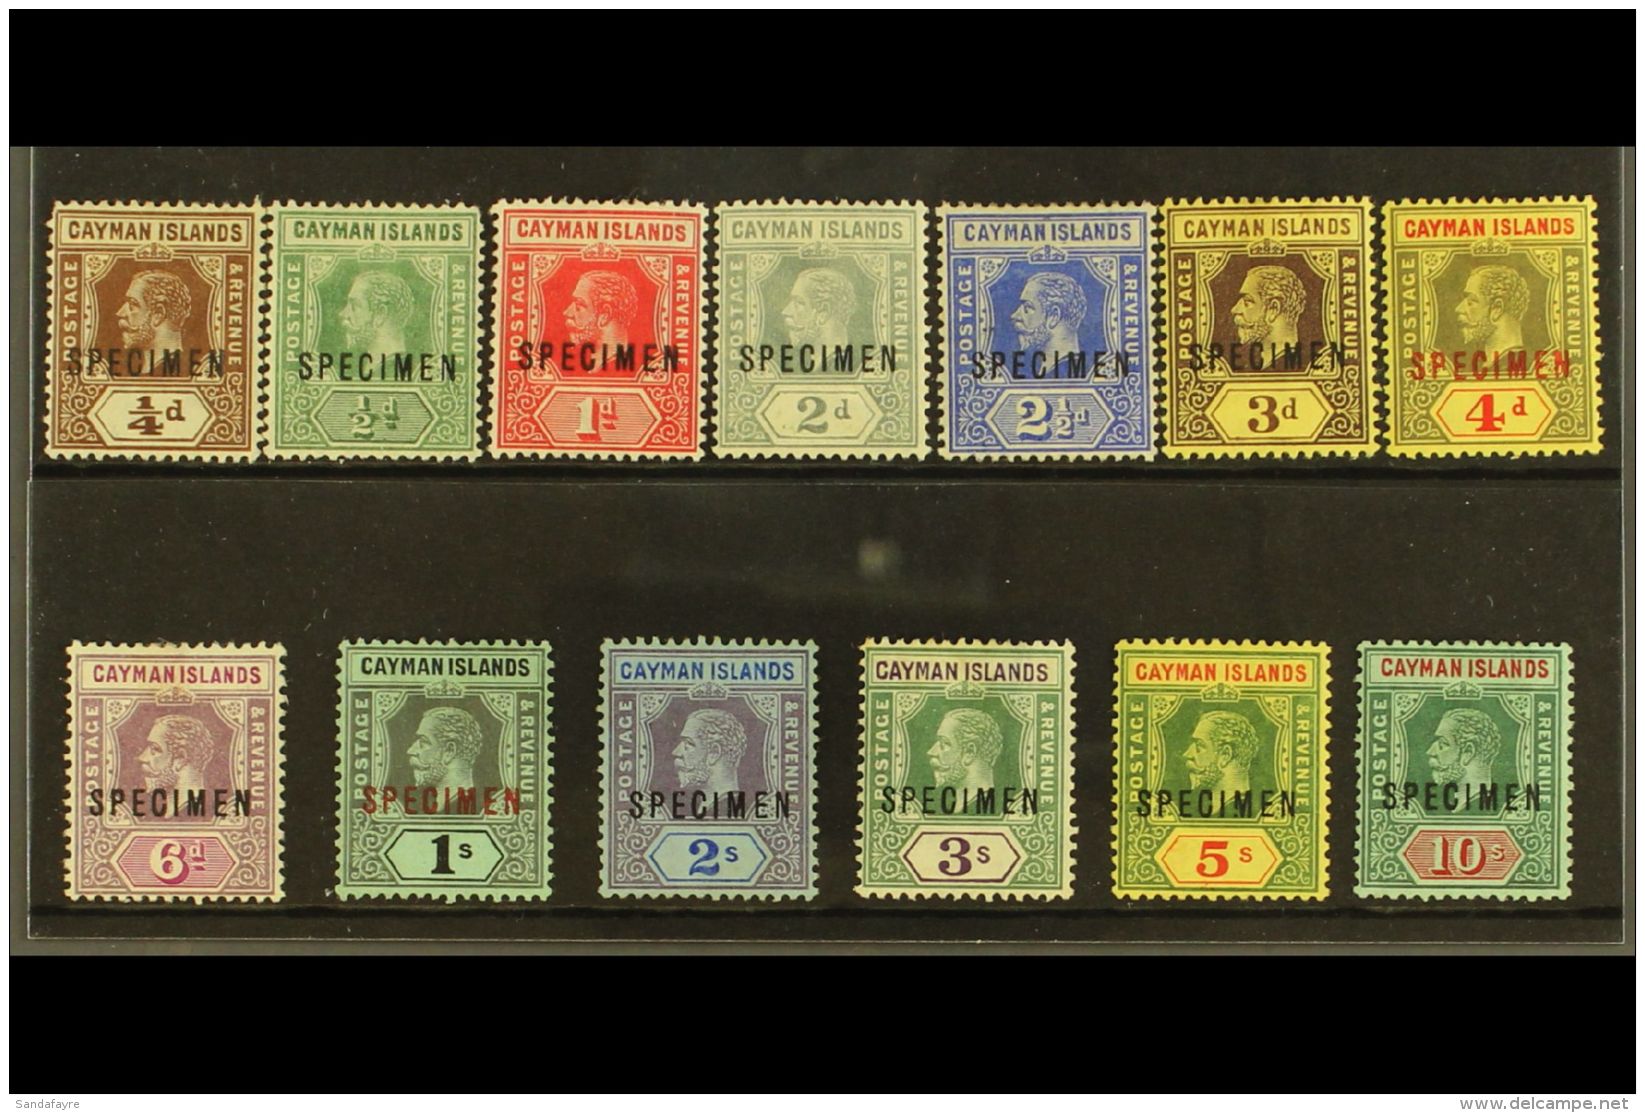 1912-20 SPECIMENS KGV Complete Set With "SPECIMEN" Overprints, SG 40s/52s, Fine Mint With Good Colour. Attractive... - Iles Caïmans